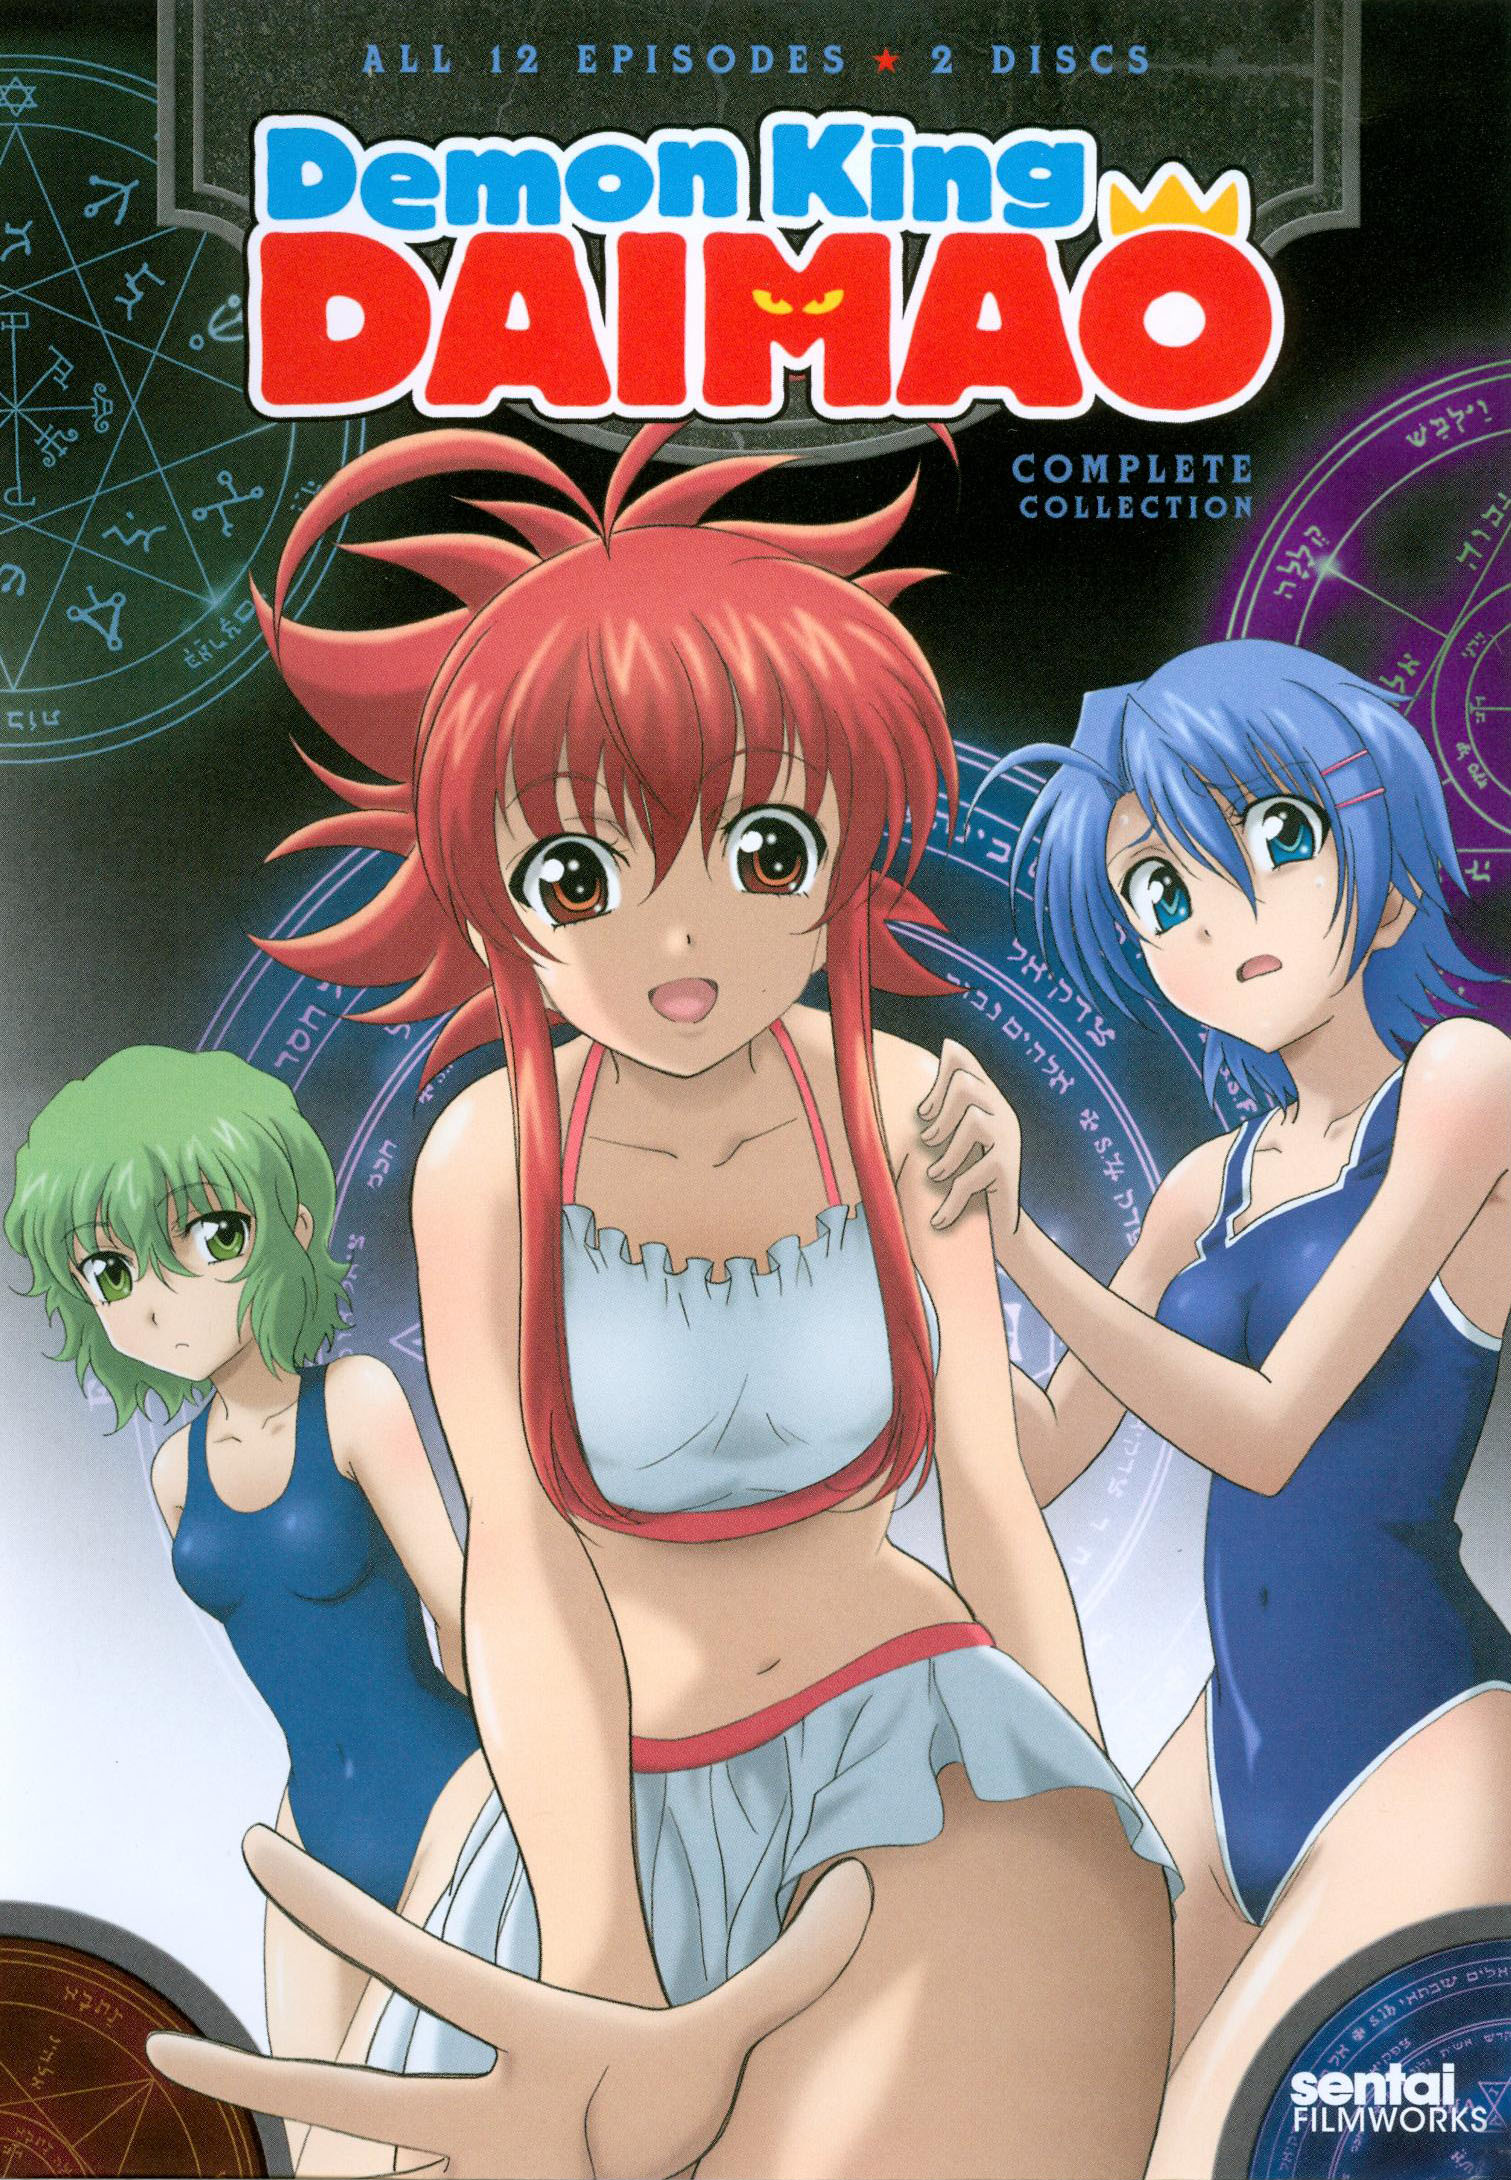 Demon King Daimao (TV) - Anime News Network